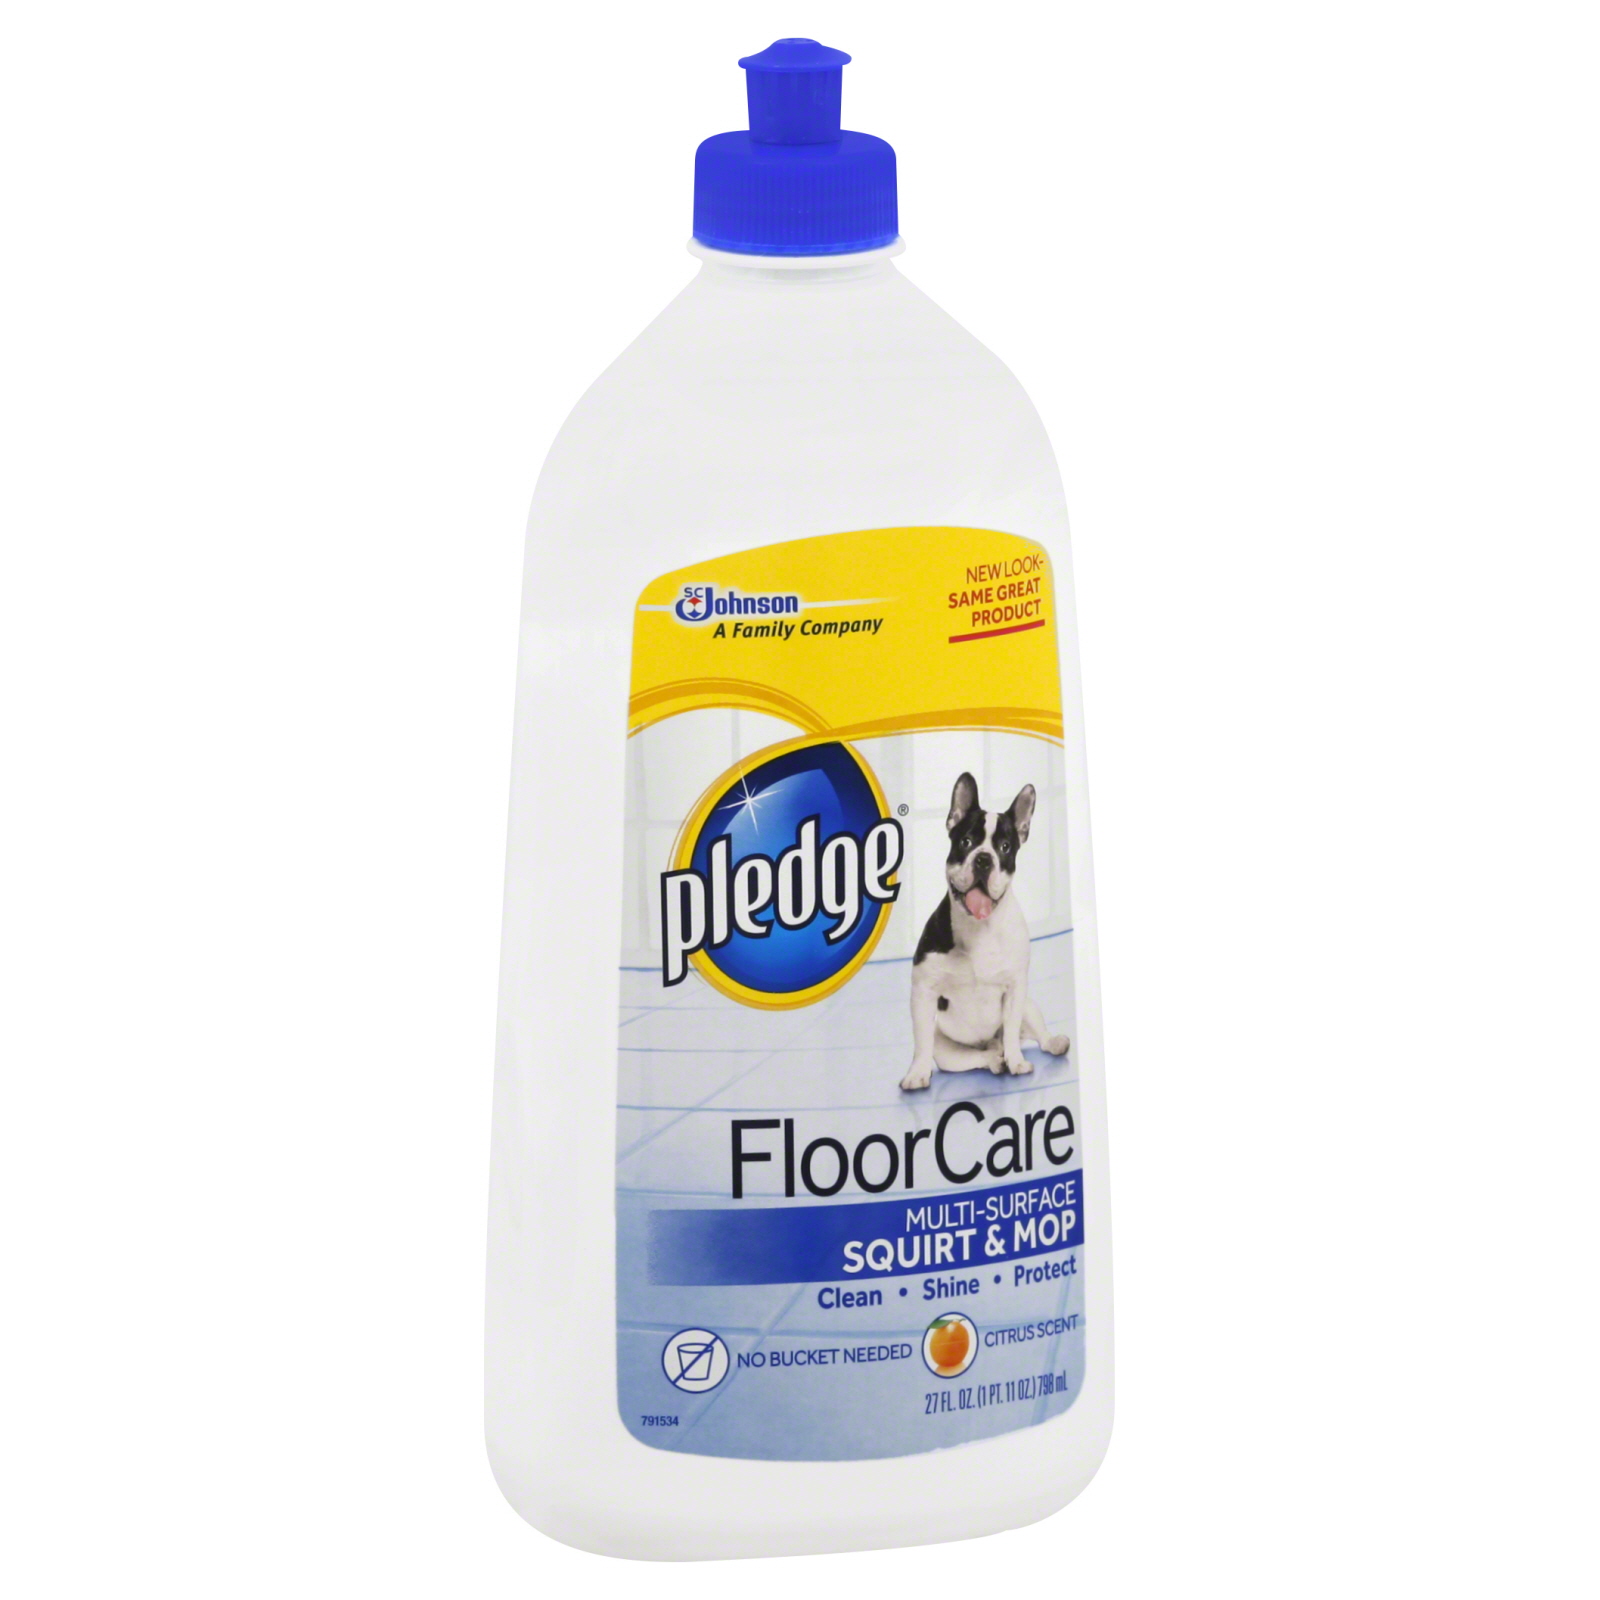 Pledge Floor Cleaner, Multi Surface, 27 fl oz (1 pt 11 oz) 798 ml